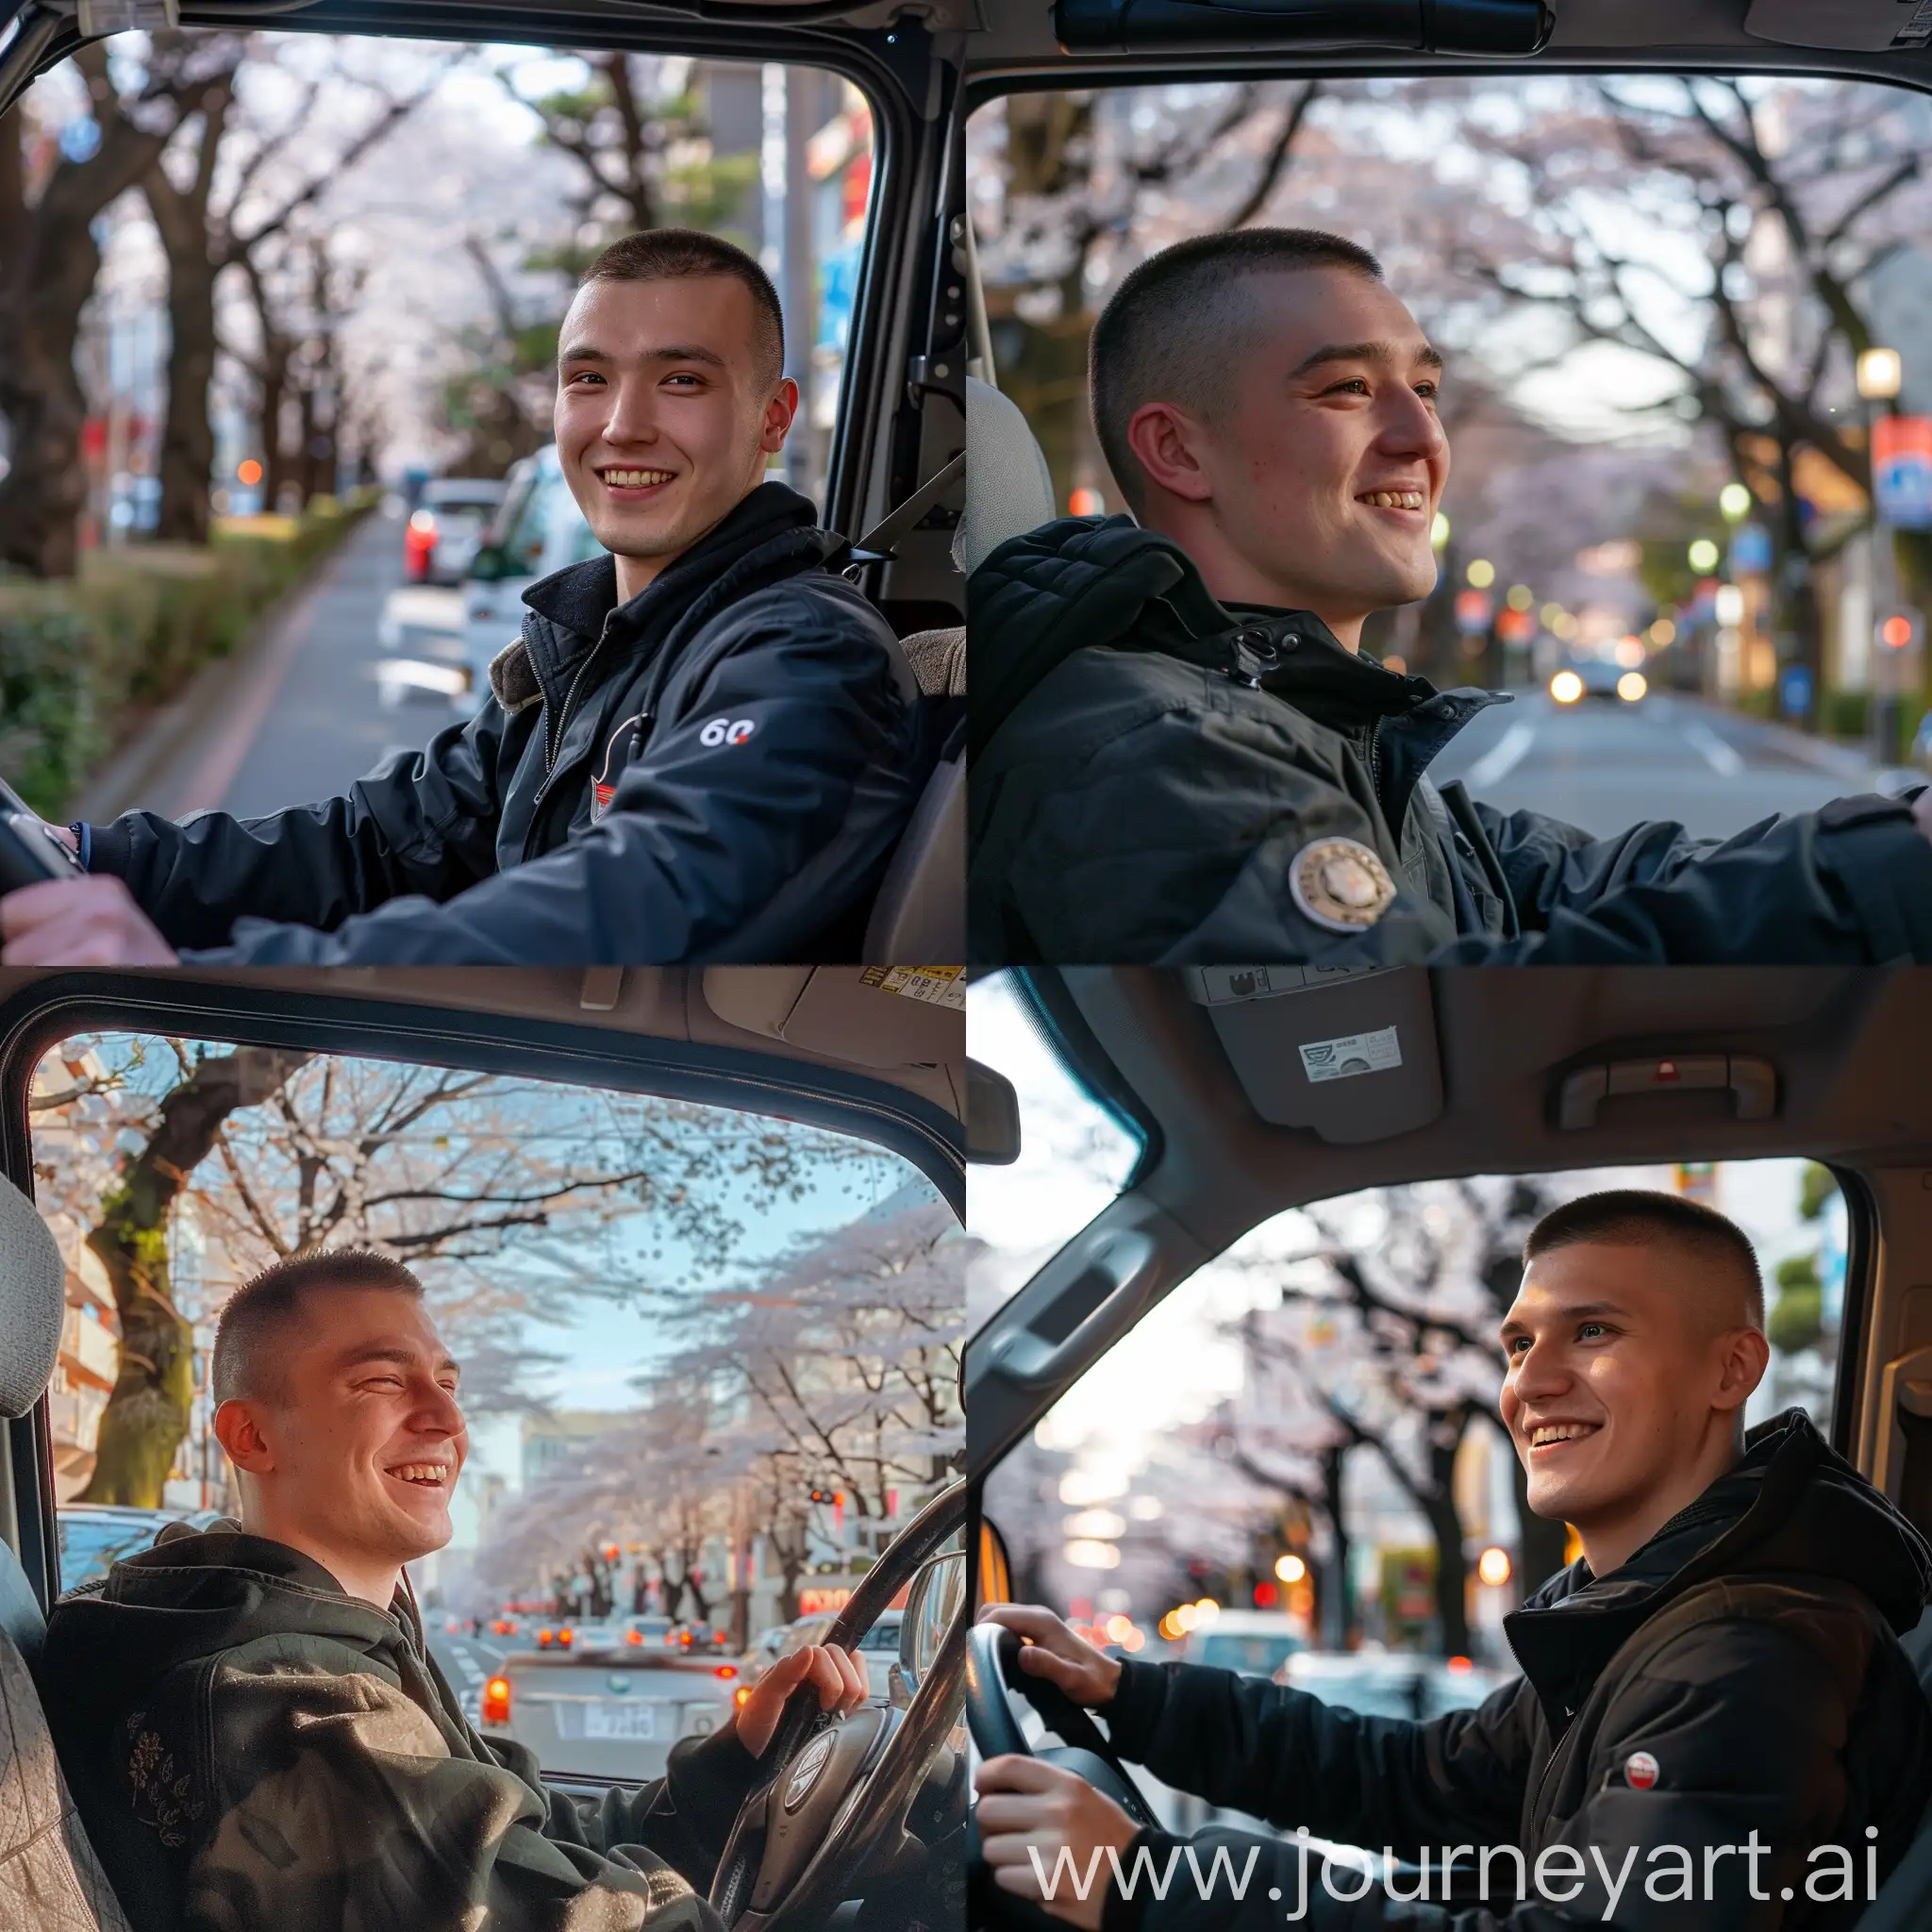 Парень двадцати лет славянской внешности с короткой прической улыбается и сидит за рулём на своём авто lifan x 60 и выглядывает в окно. Он катается по токио на красивой улице с деревьями сакуры